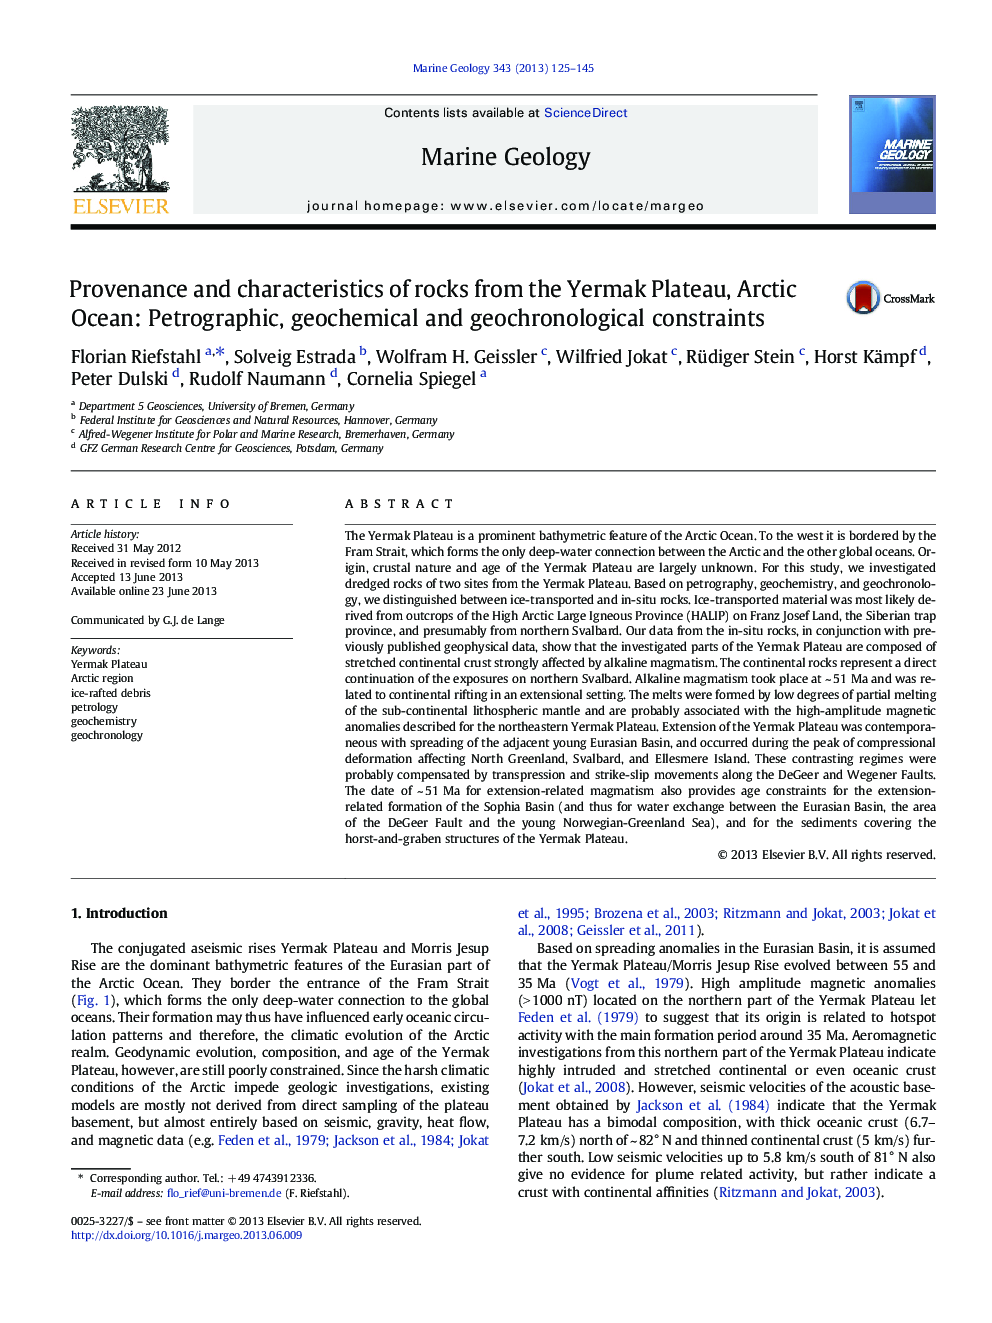 استان فارس و ویژگی های سنگ از پلات یرمک، اقیانوس اطلس: پتروگرافی، ژئوشیمیایی و محدودیت های ژئوشنگولوژیک 